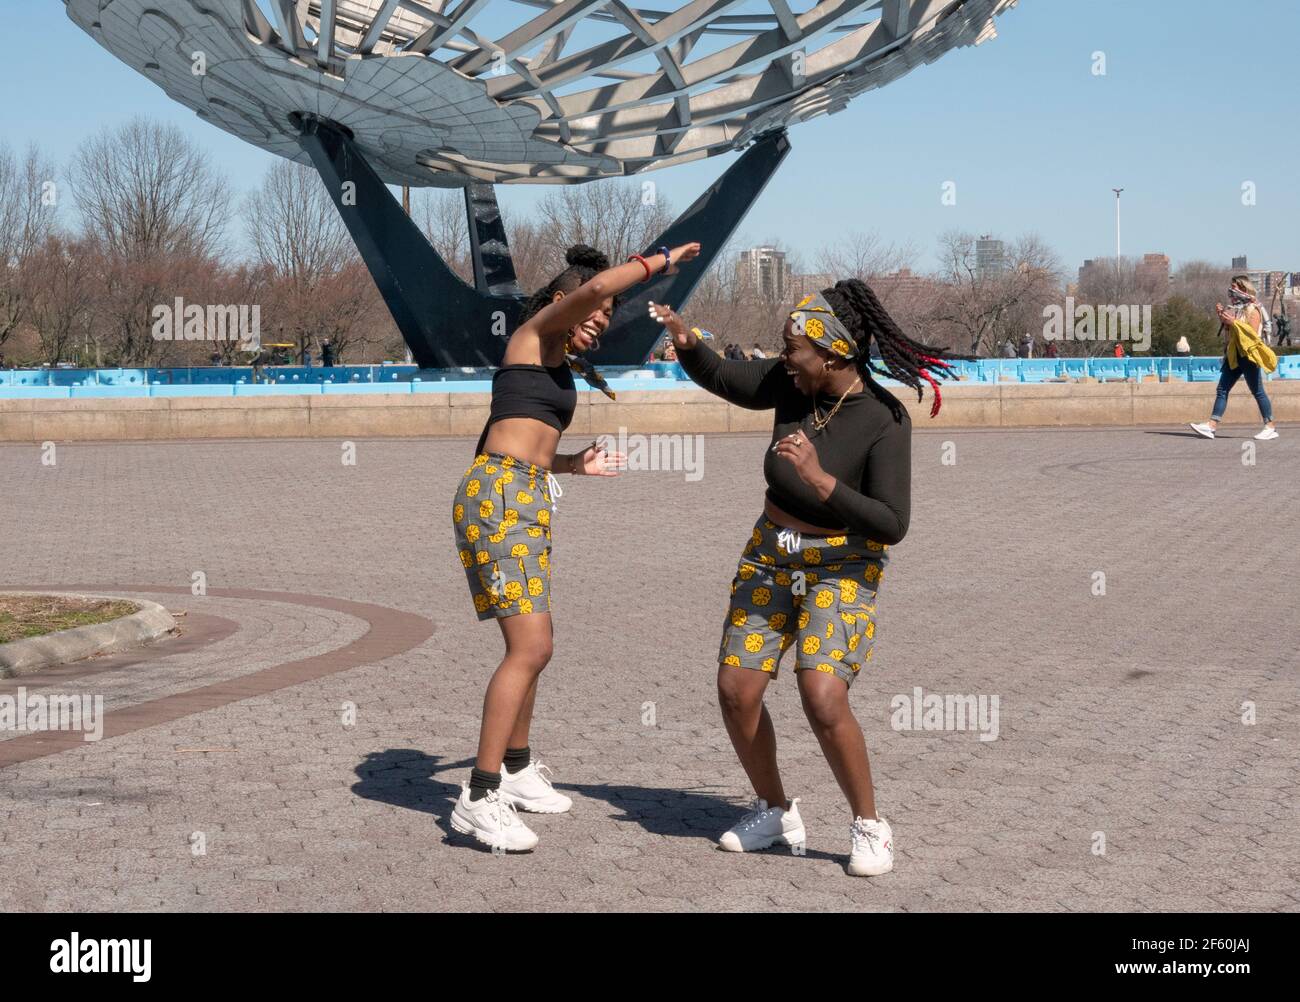 Schwestern aus Ghana nehmen Tanzroutinen in der Nähe von Unisphere im Flushing Meadows Corona Park in Queens, New York City, auf. Stockfoto